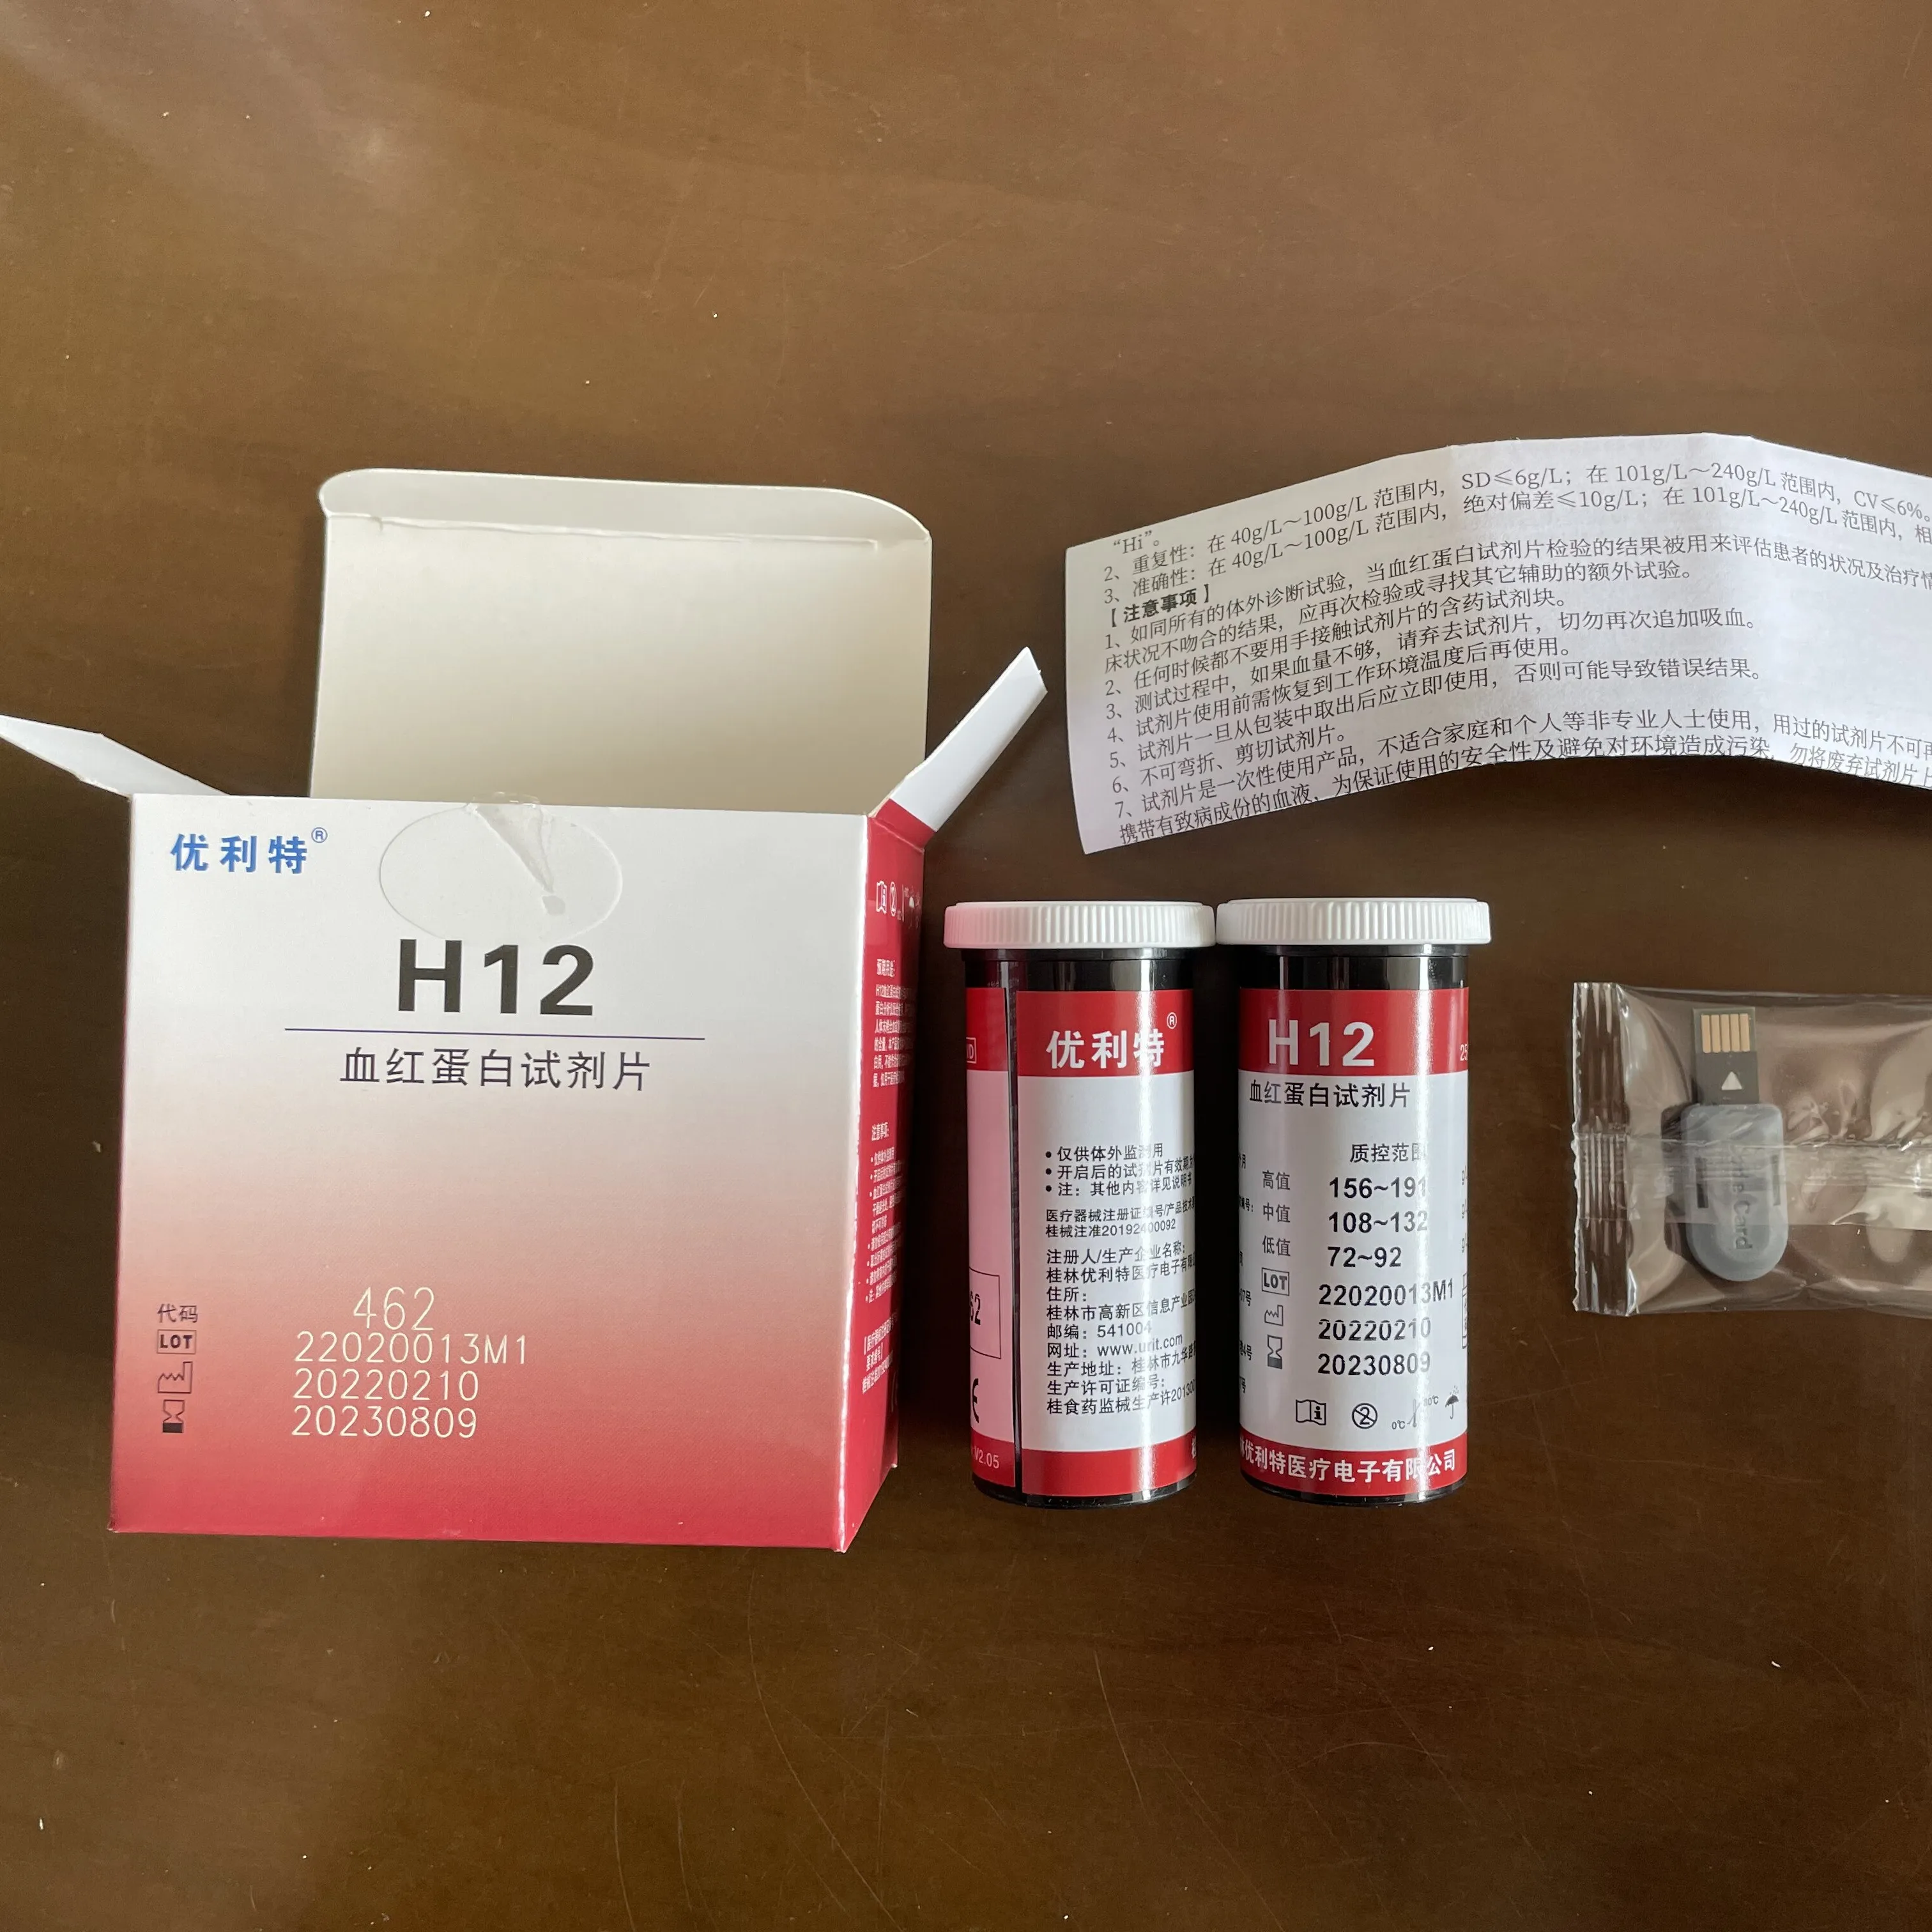 Urit12デジタルヘグロビンメーター試験装置